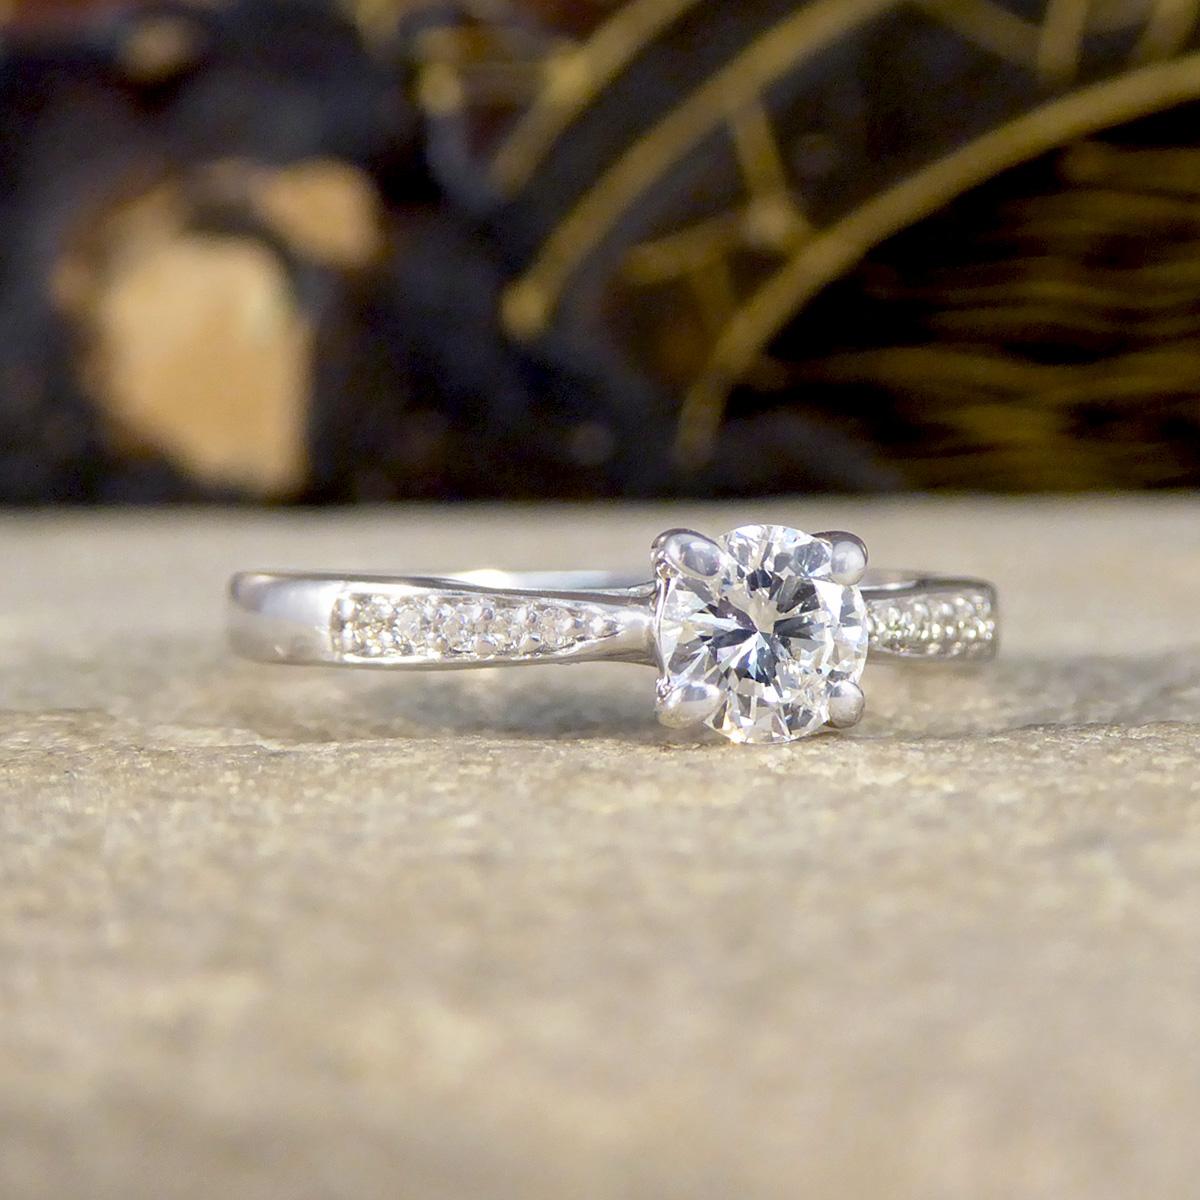 Cette bague solitaire classique en diamant est l'incarnation de l'élégance intemporelle et du charme sophistiqué et ferait la bague de fiançailles parfaite. Réalisée en or blanc 18 ct, elle est ornée d'un superbe diamant de 0,40 ct en son cœur,